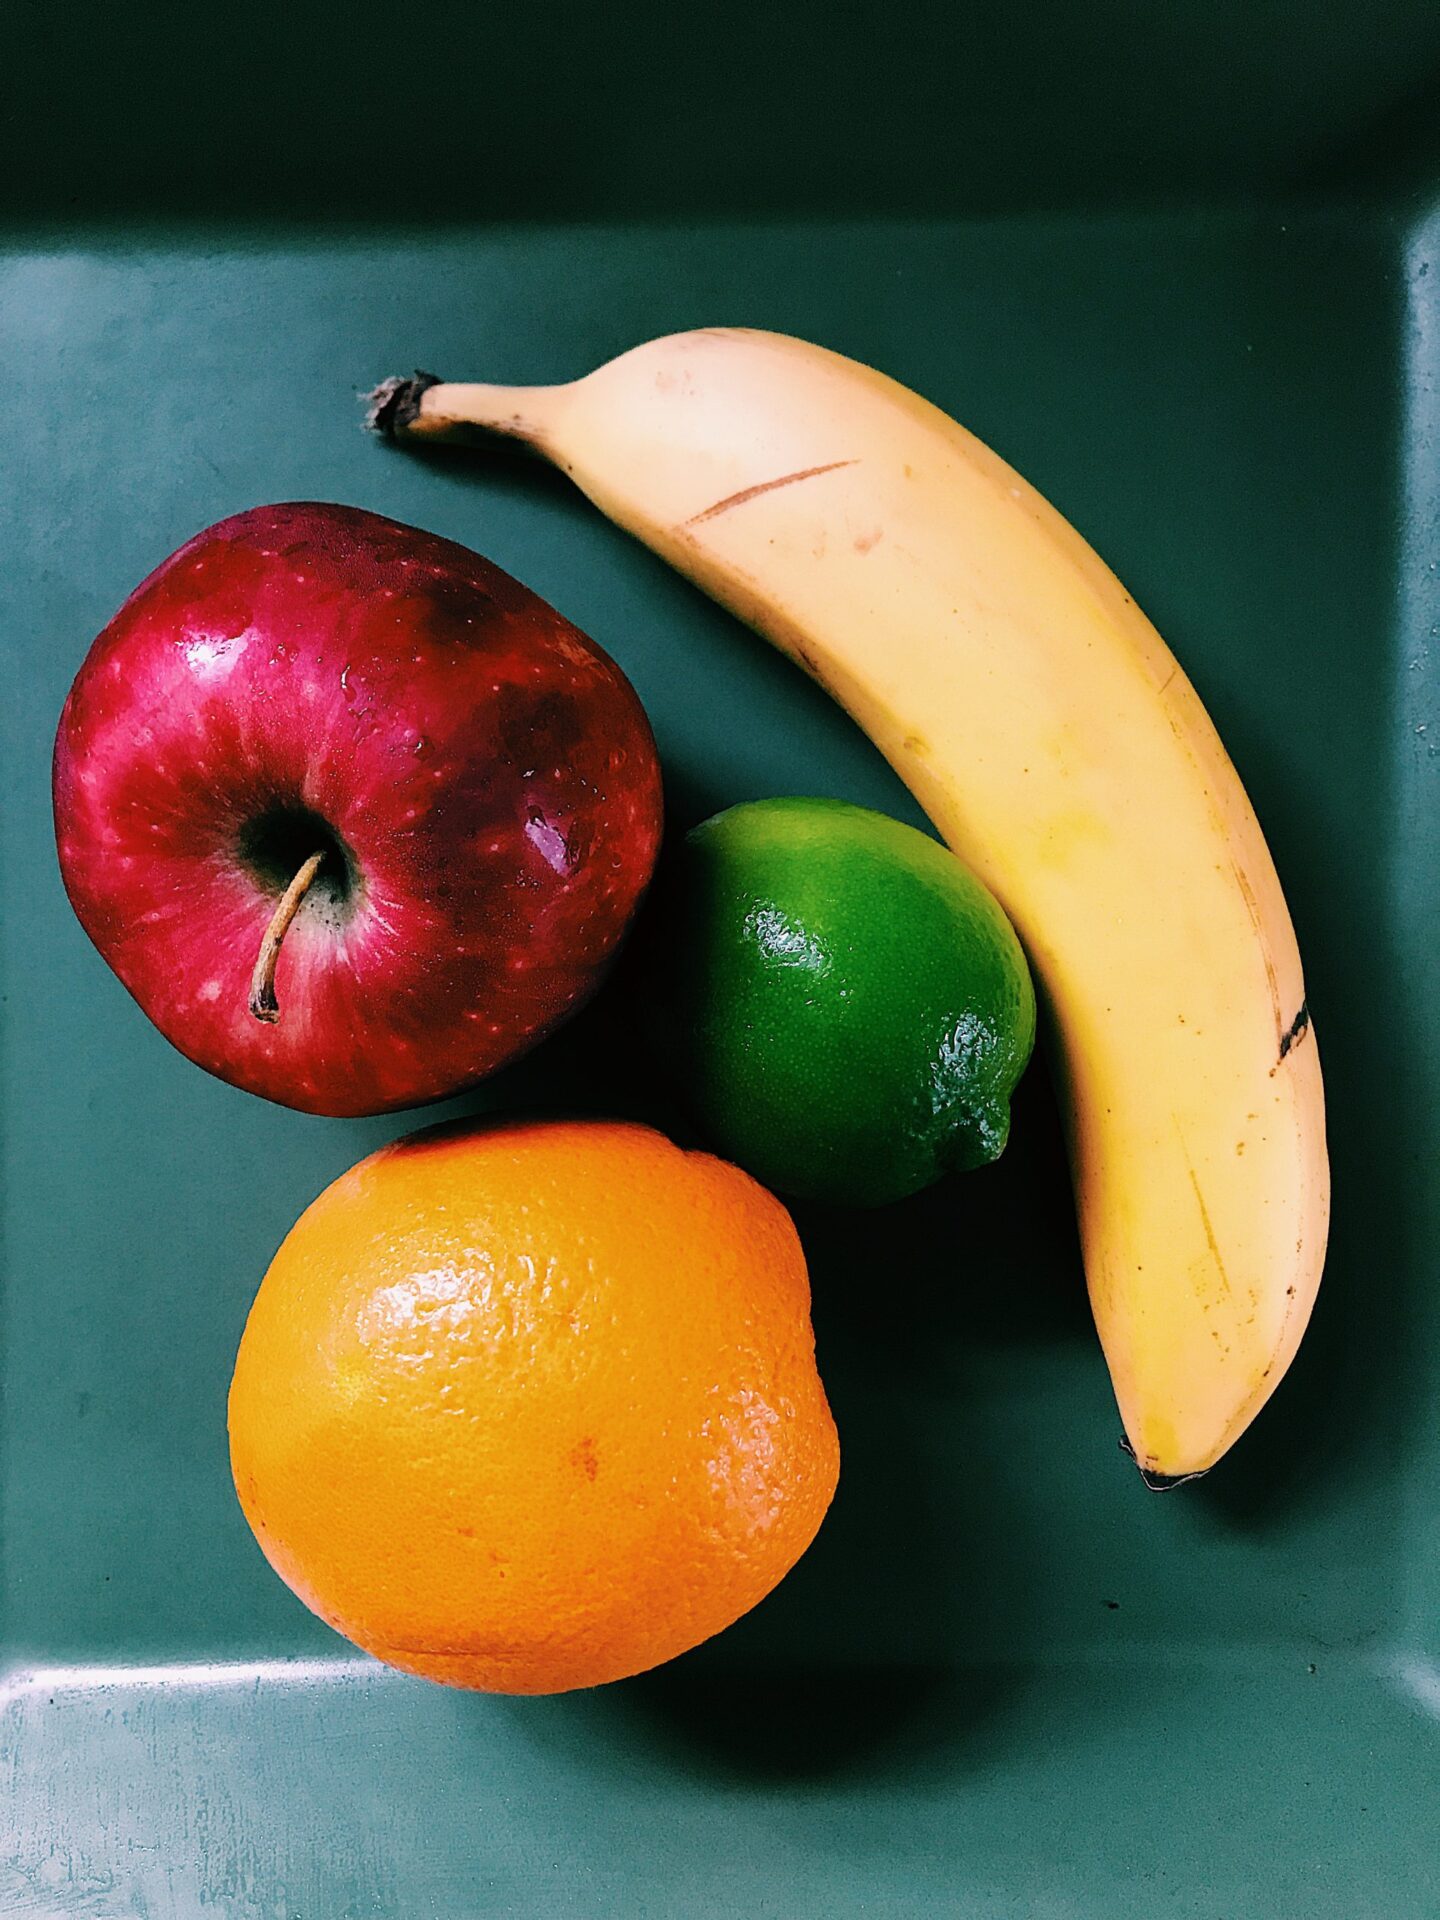 banana, apple, lime and orange displayed on plate